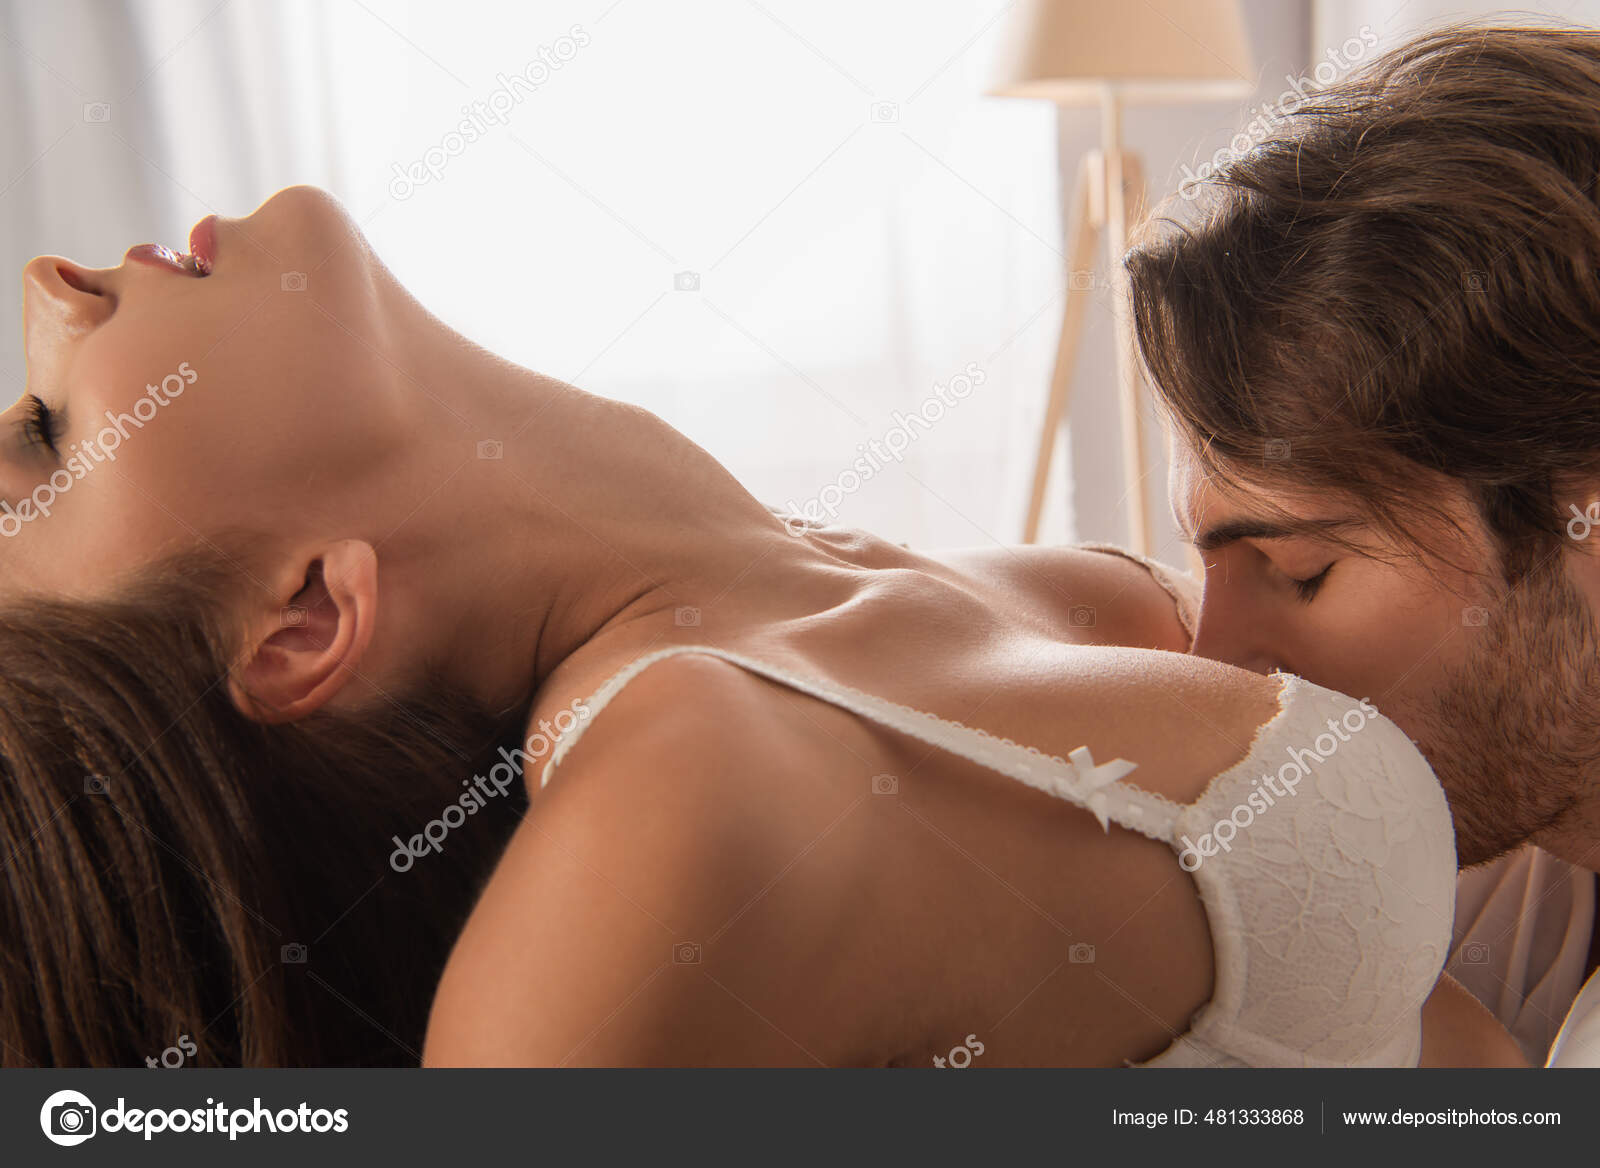 целовал груди жены друга фото 97